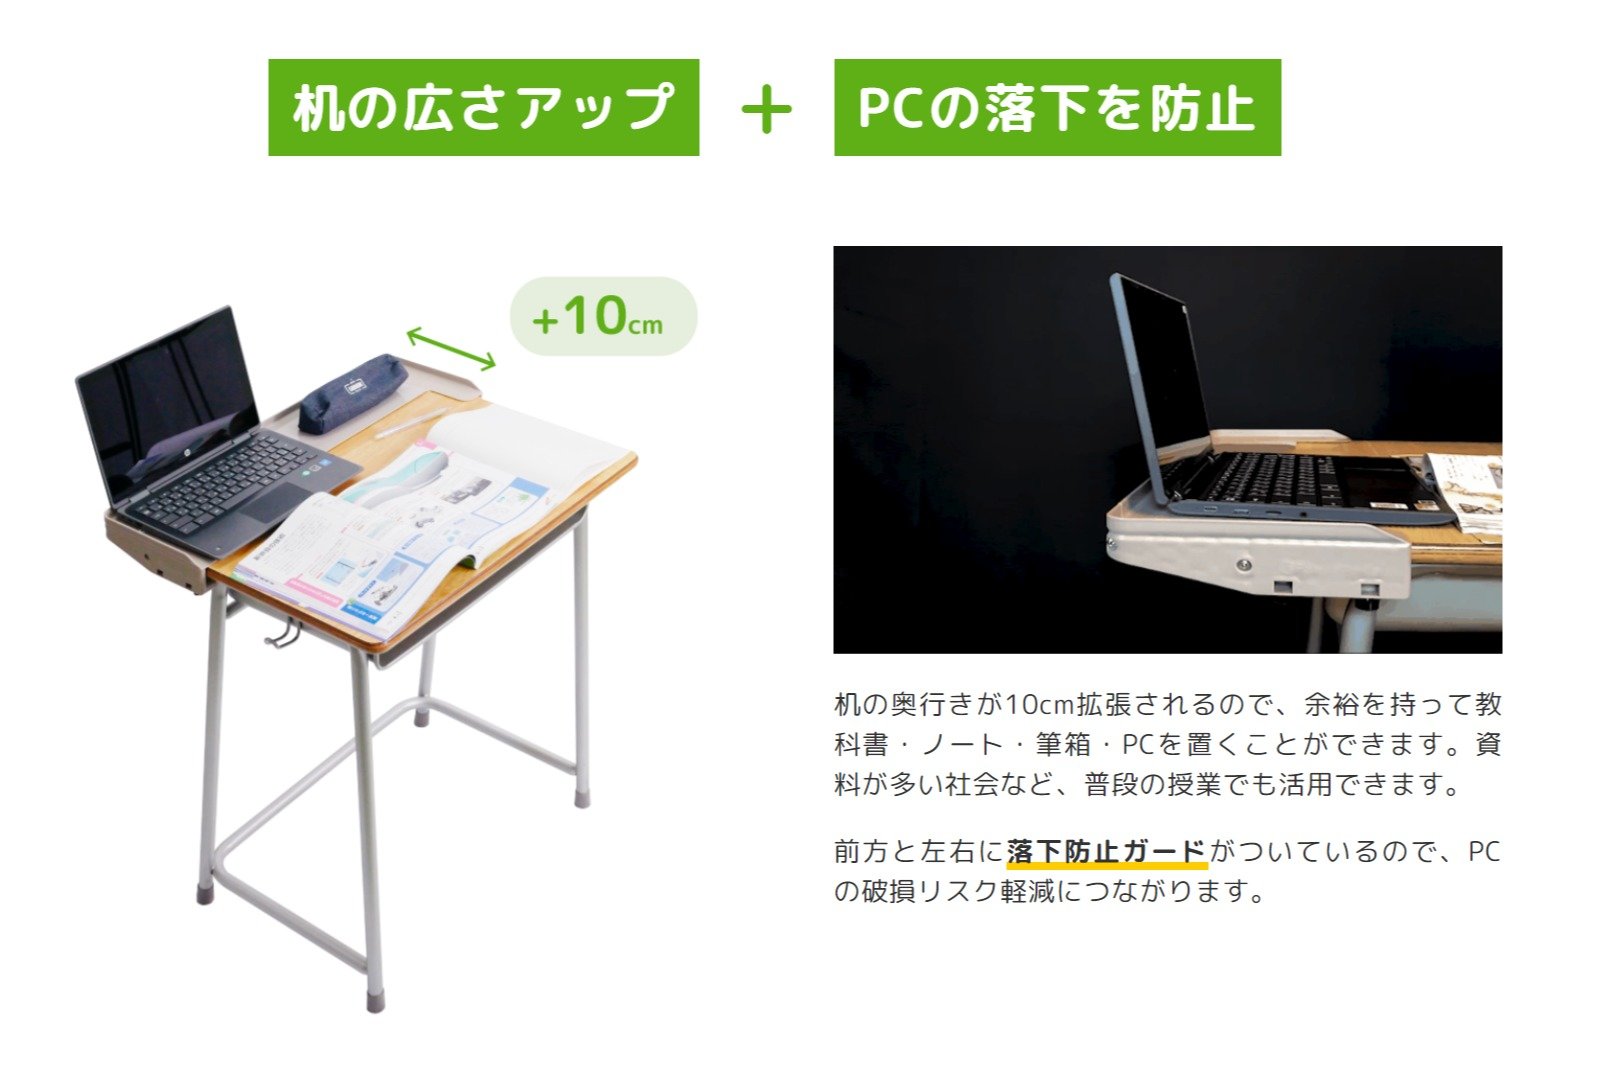 学校の机、PC置くと狭すぎ」問題解決へ 「天板拡張くん」登場